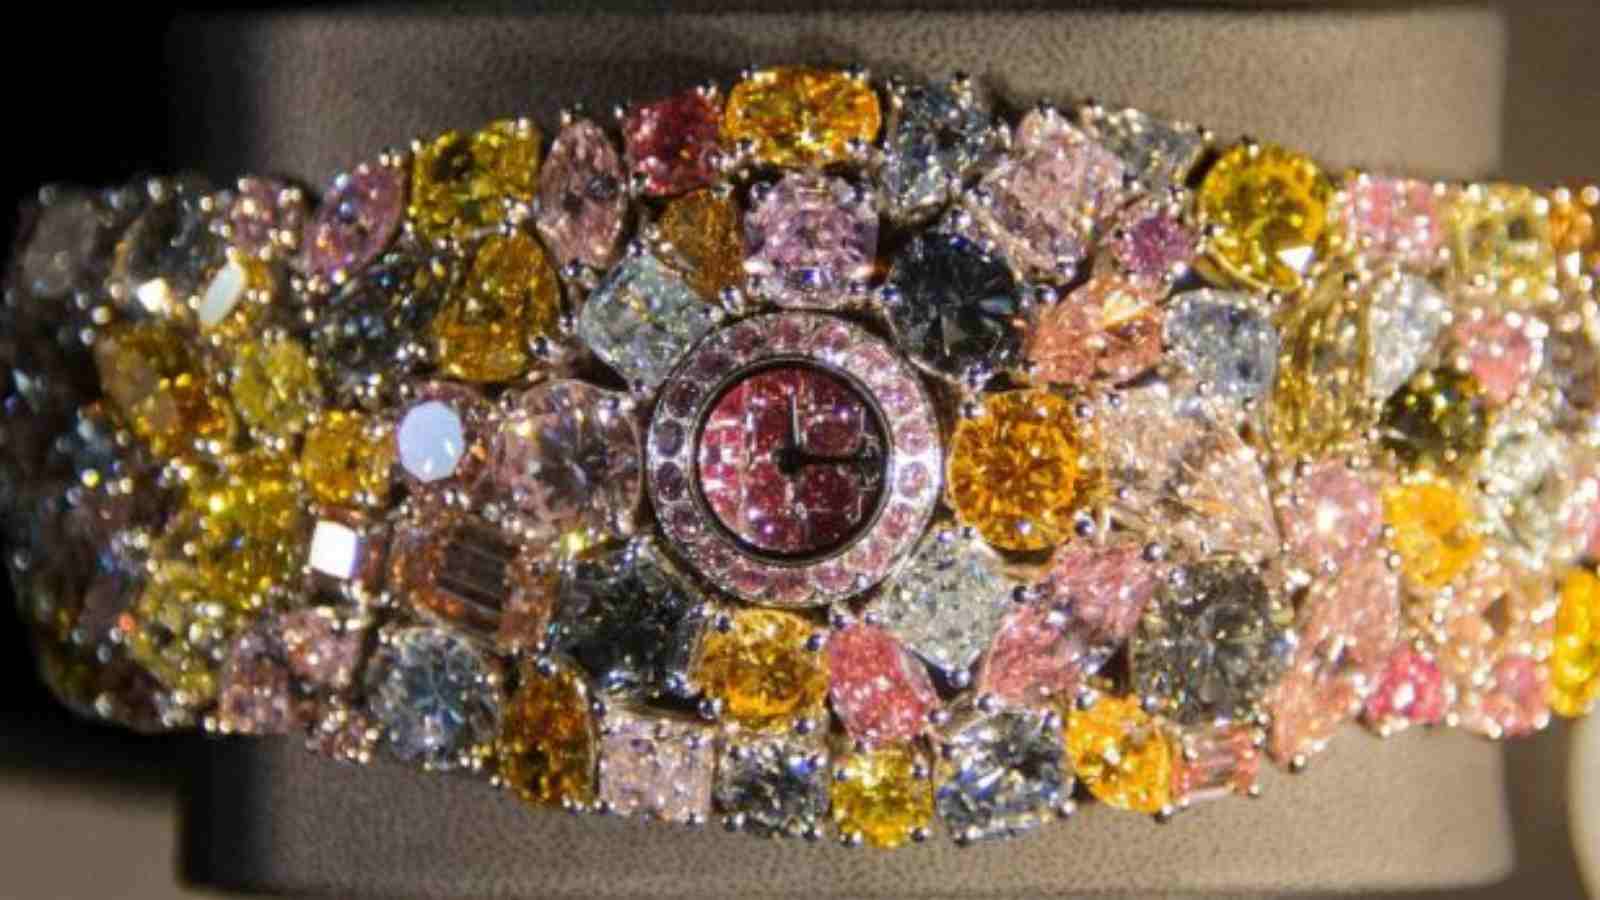 201-Carat Gemstone Watch